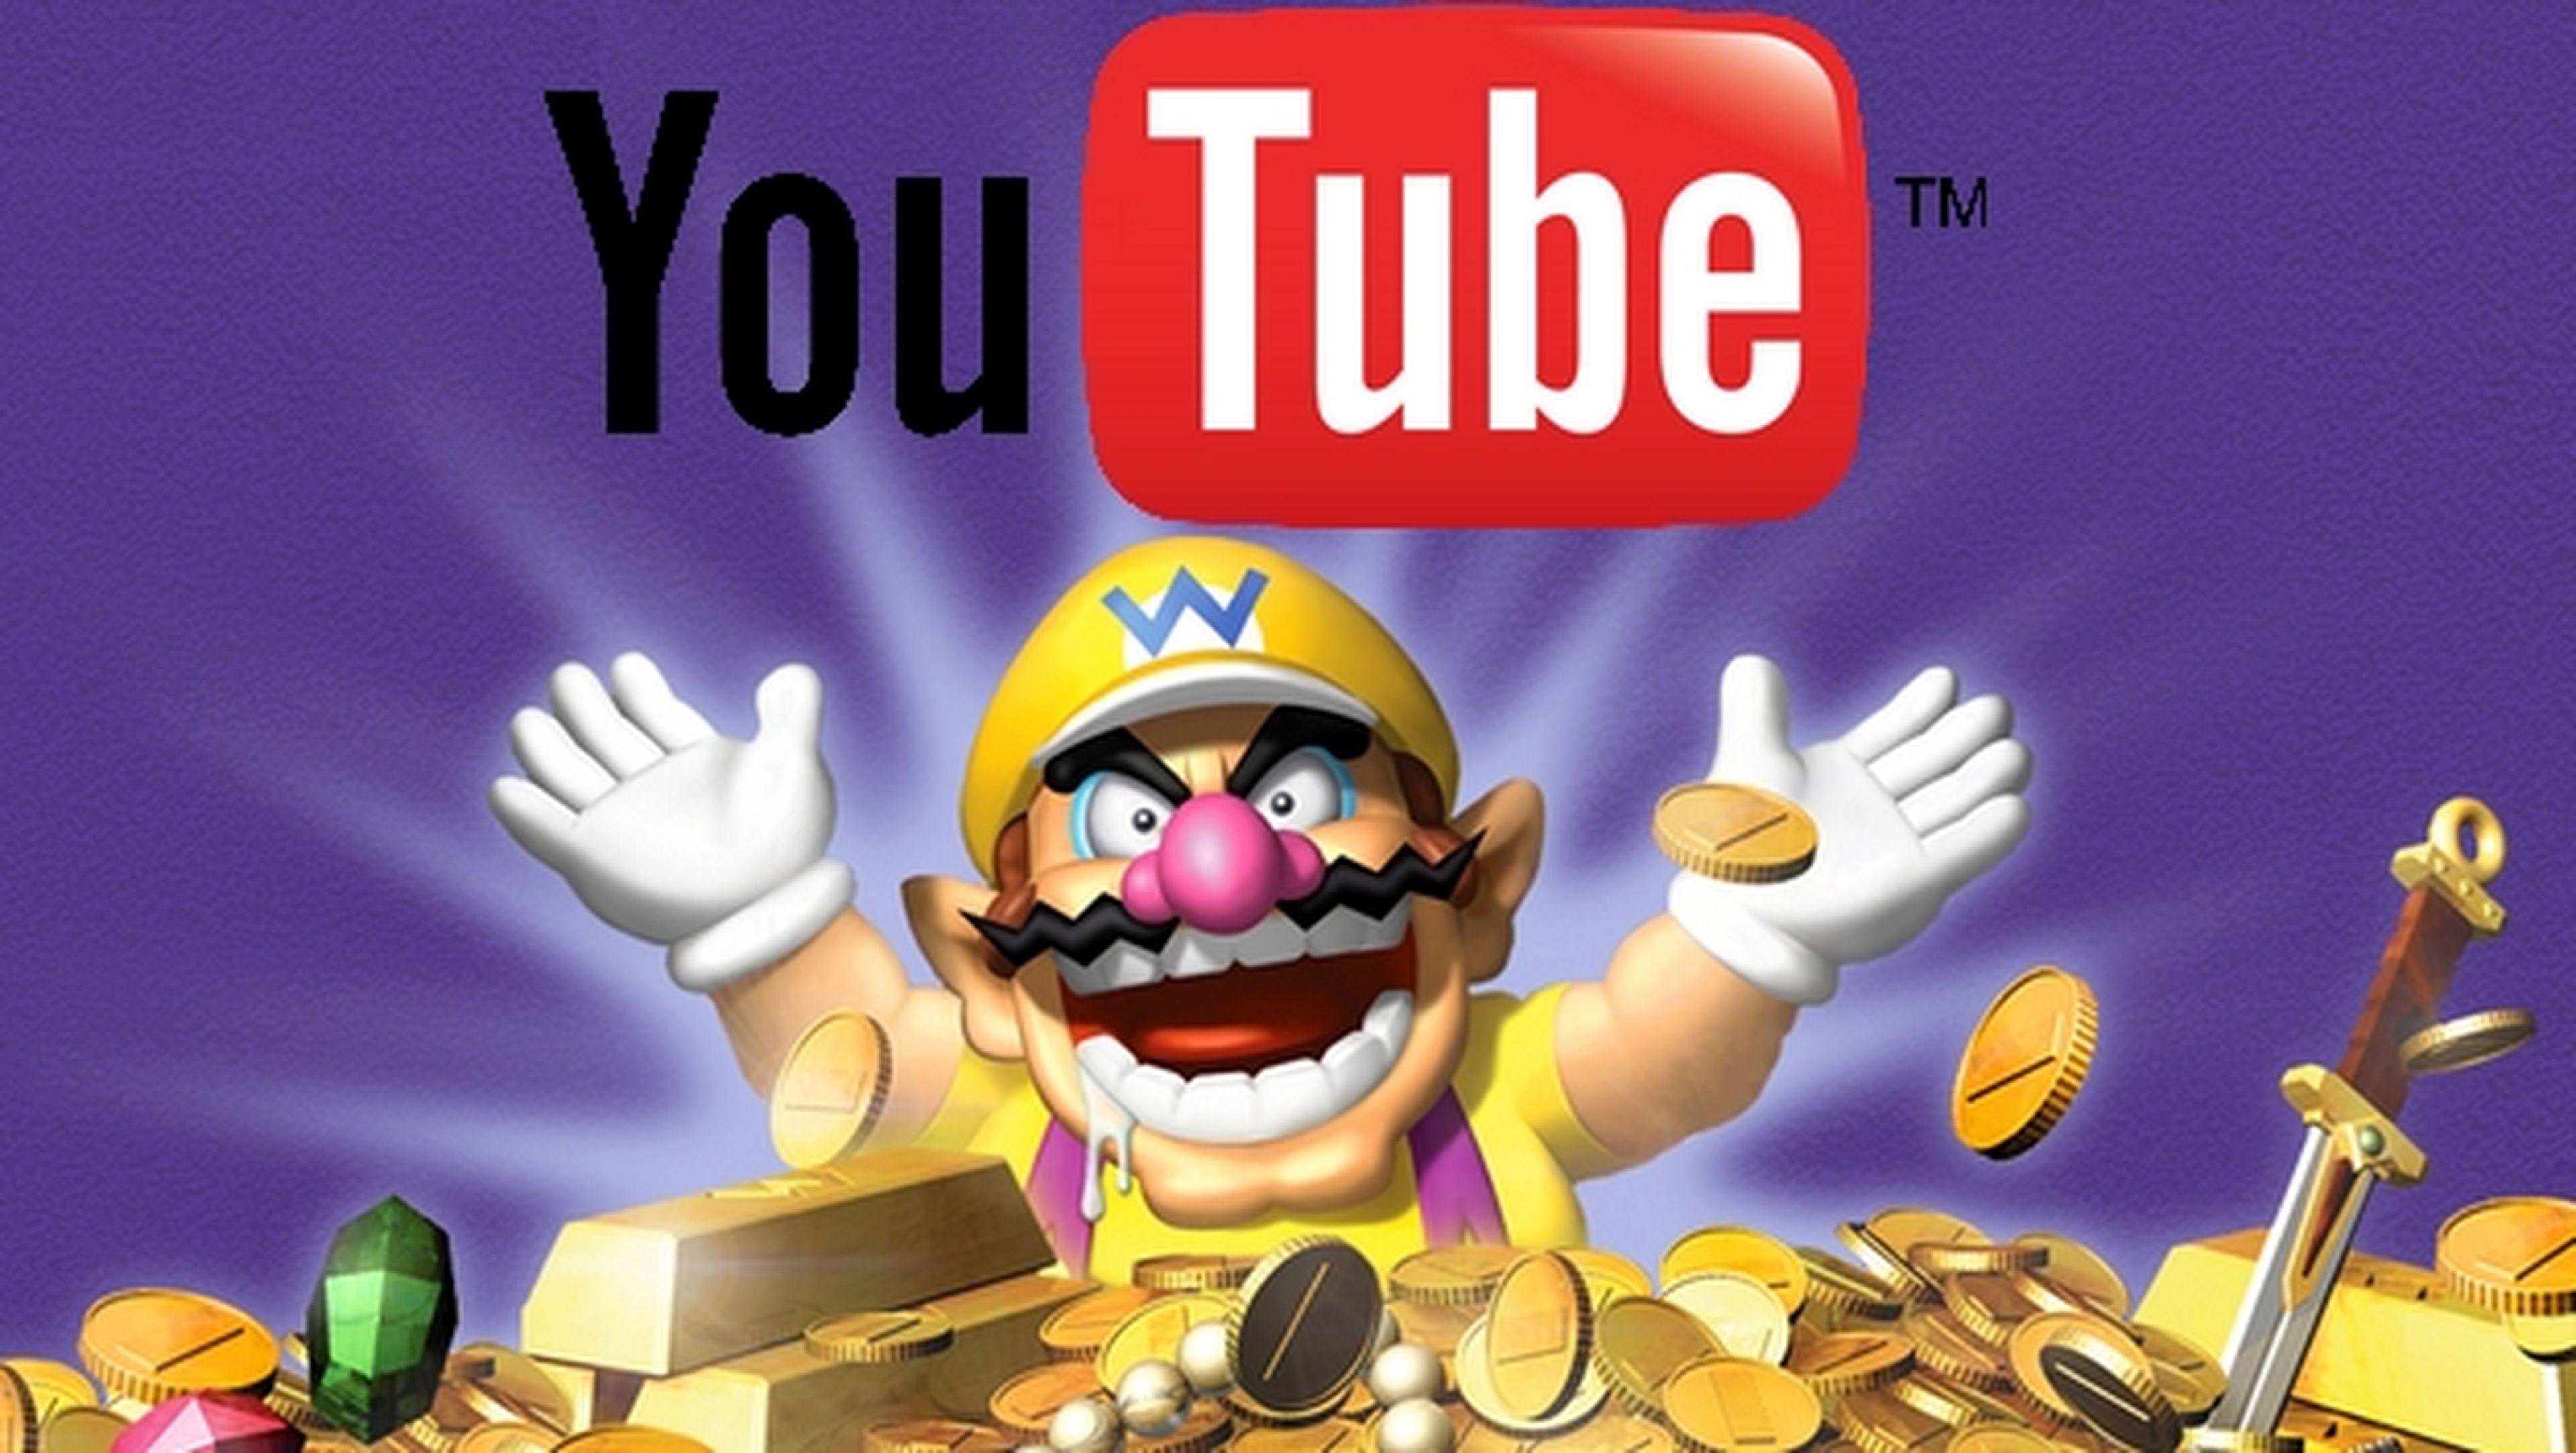 Nintendo te paga dinero si subes vídeos a YouTube.